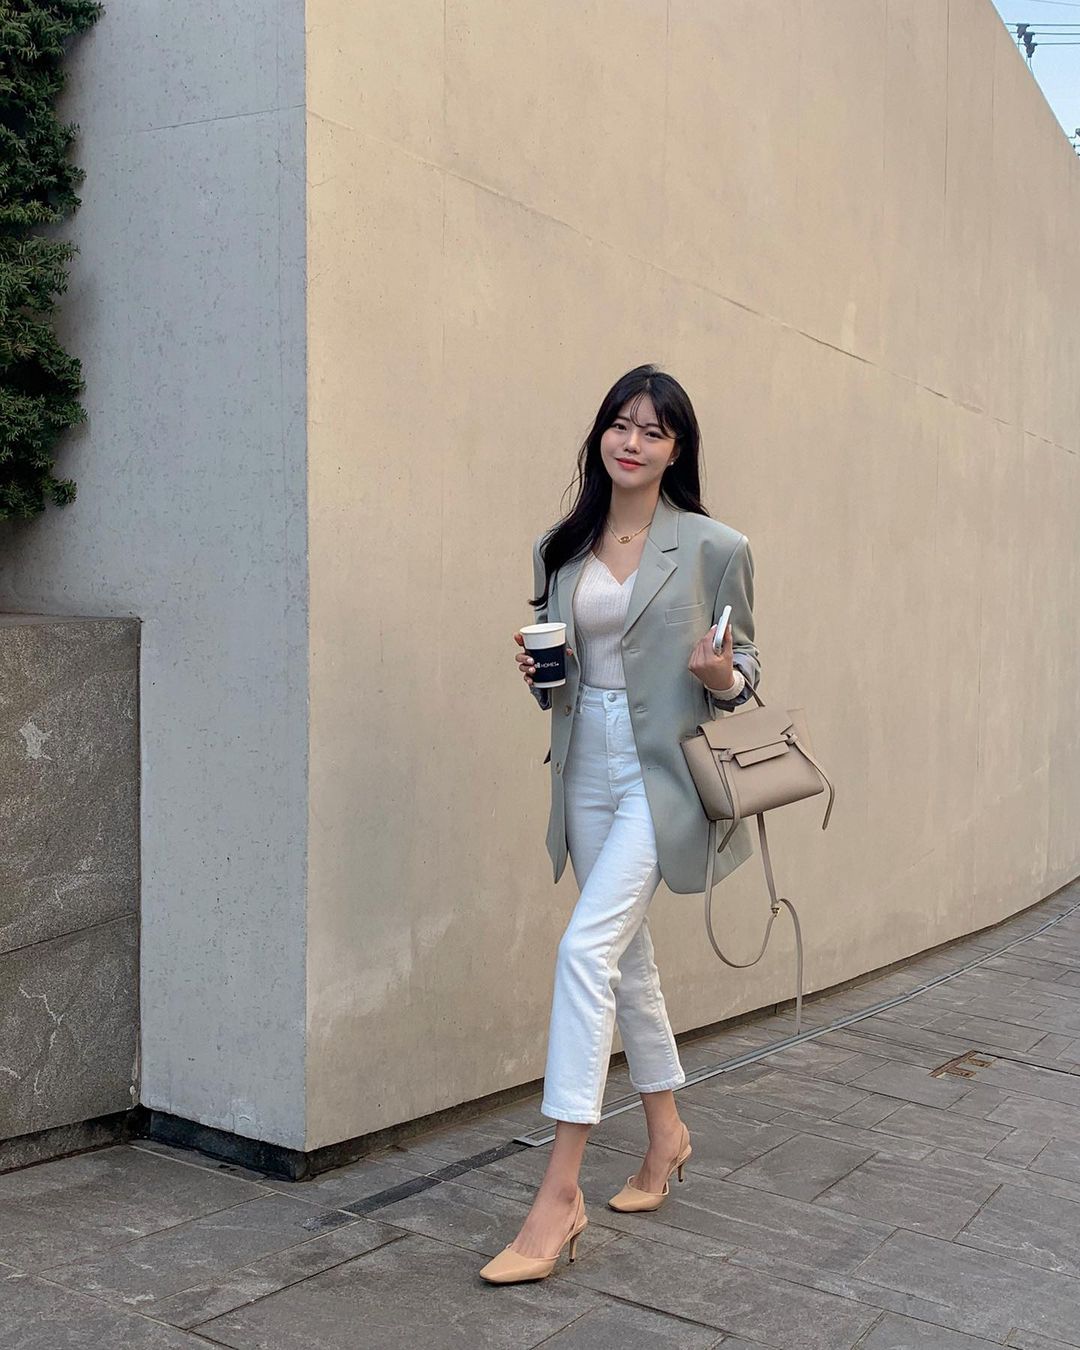 Học nàng blogger Hàn cách diện jeans “đỉnh của chóp”: Vừa hack dáng vừa thanh lịch để diện đến sở làm - Ảnh 8.